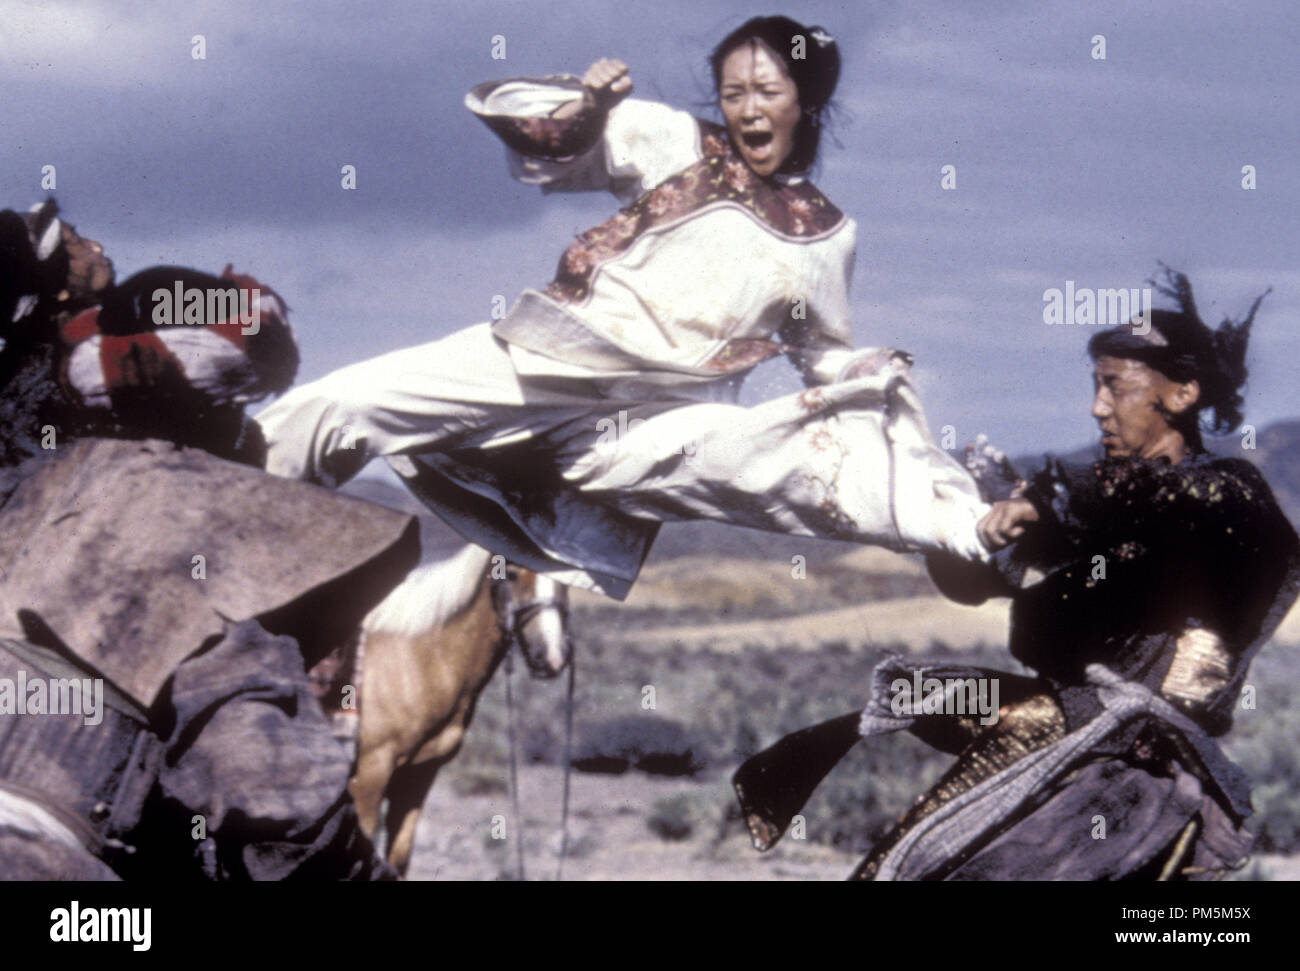 Film still / Pubblicità foto da "La tigre e il Dragone " Zhang Ziyi © 2000 Sony Pictures Classics Photo credit: Chan Kam Chuen Riferimento File # 30846663THA per solo uso editoriale - Tutti i diritti riservati Foto Stock